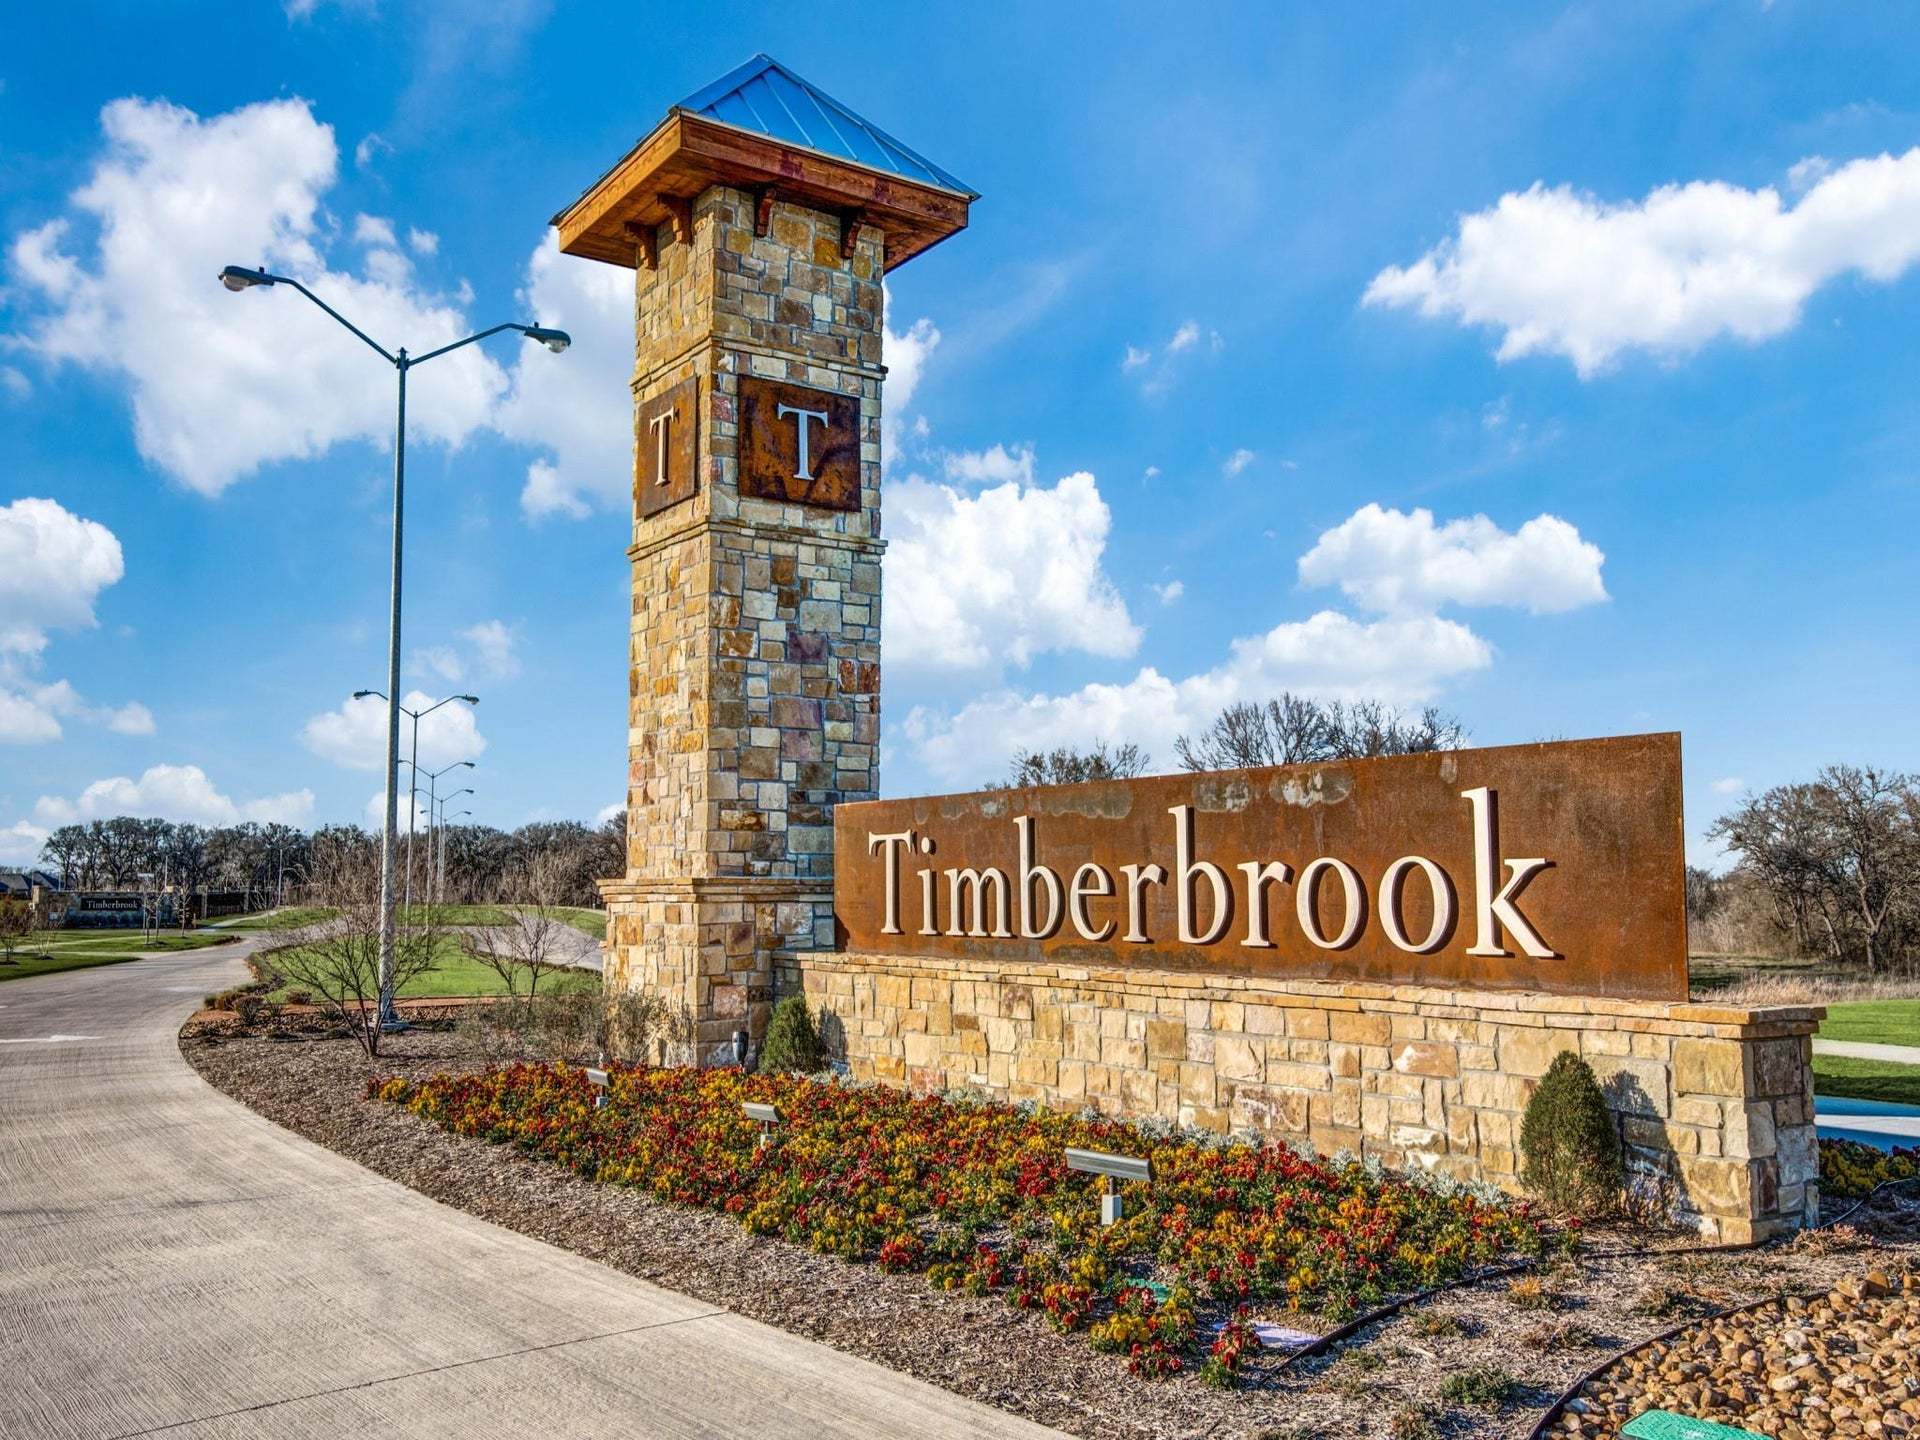 Timberbrook Sign:Timberbrook Community Signs